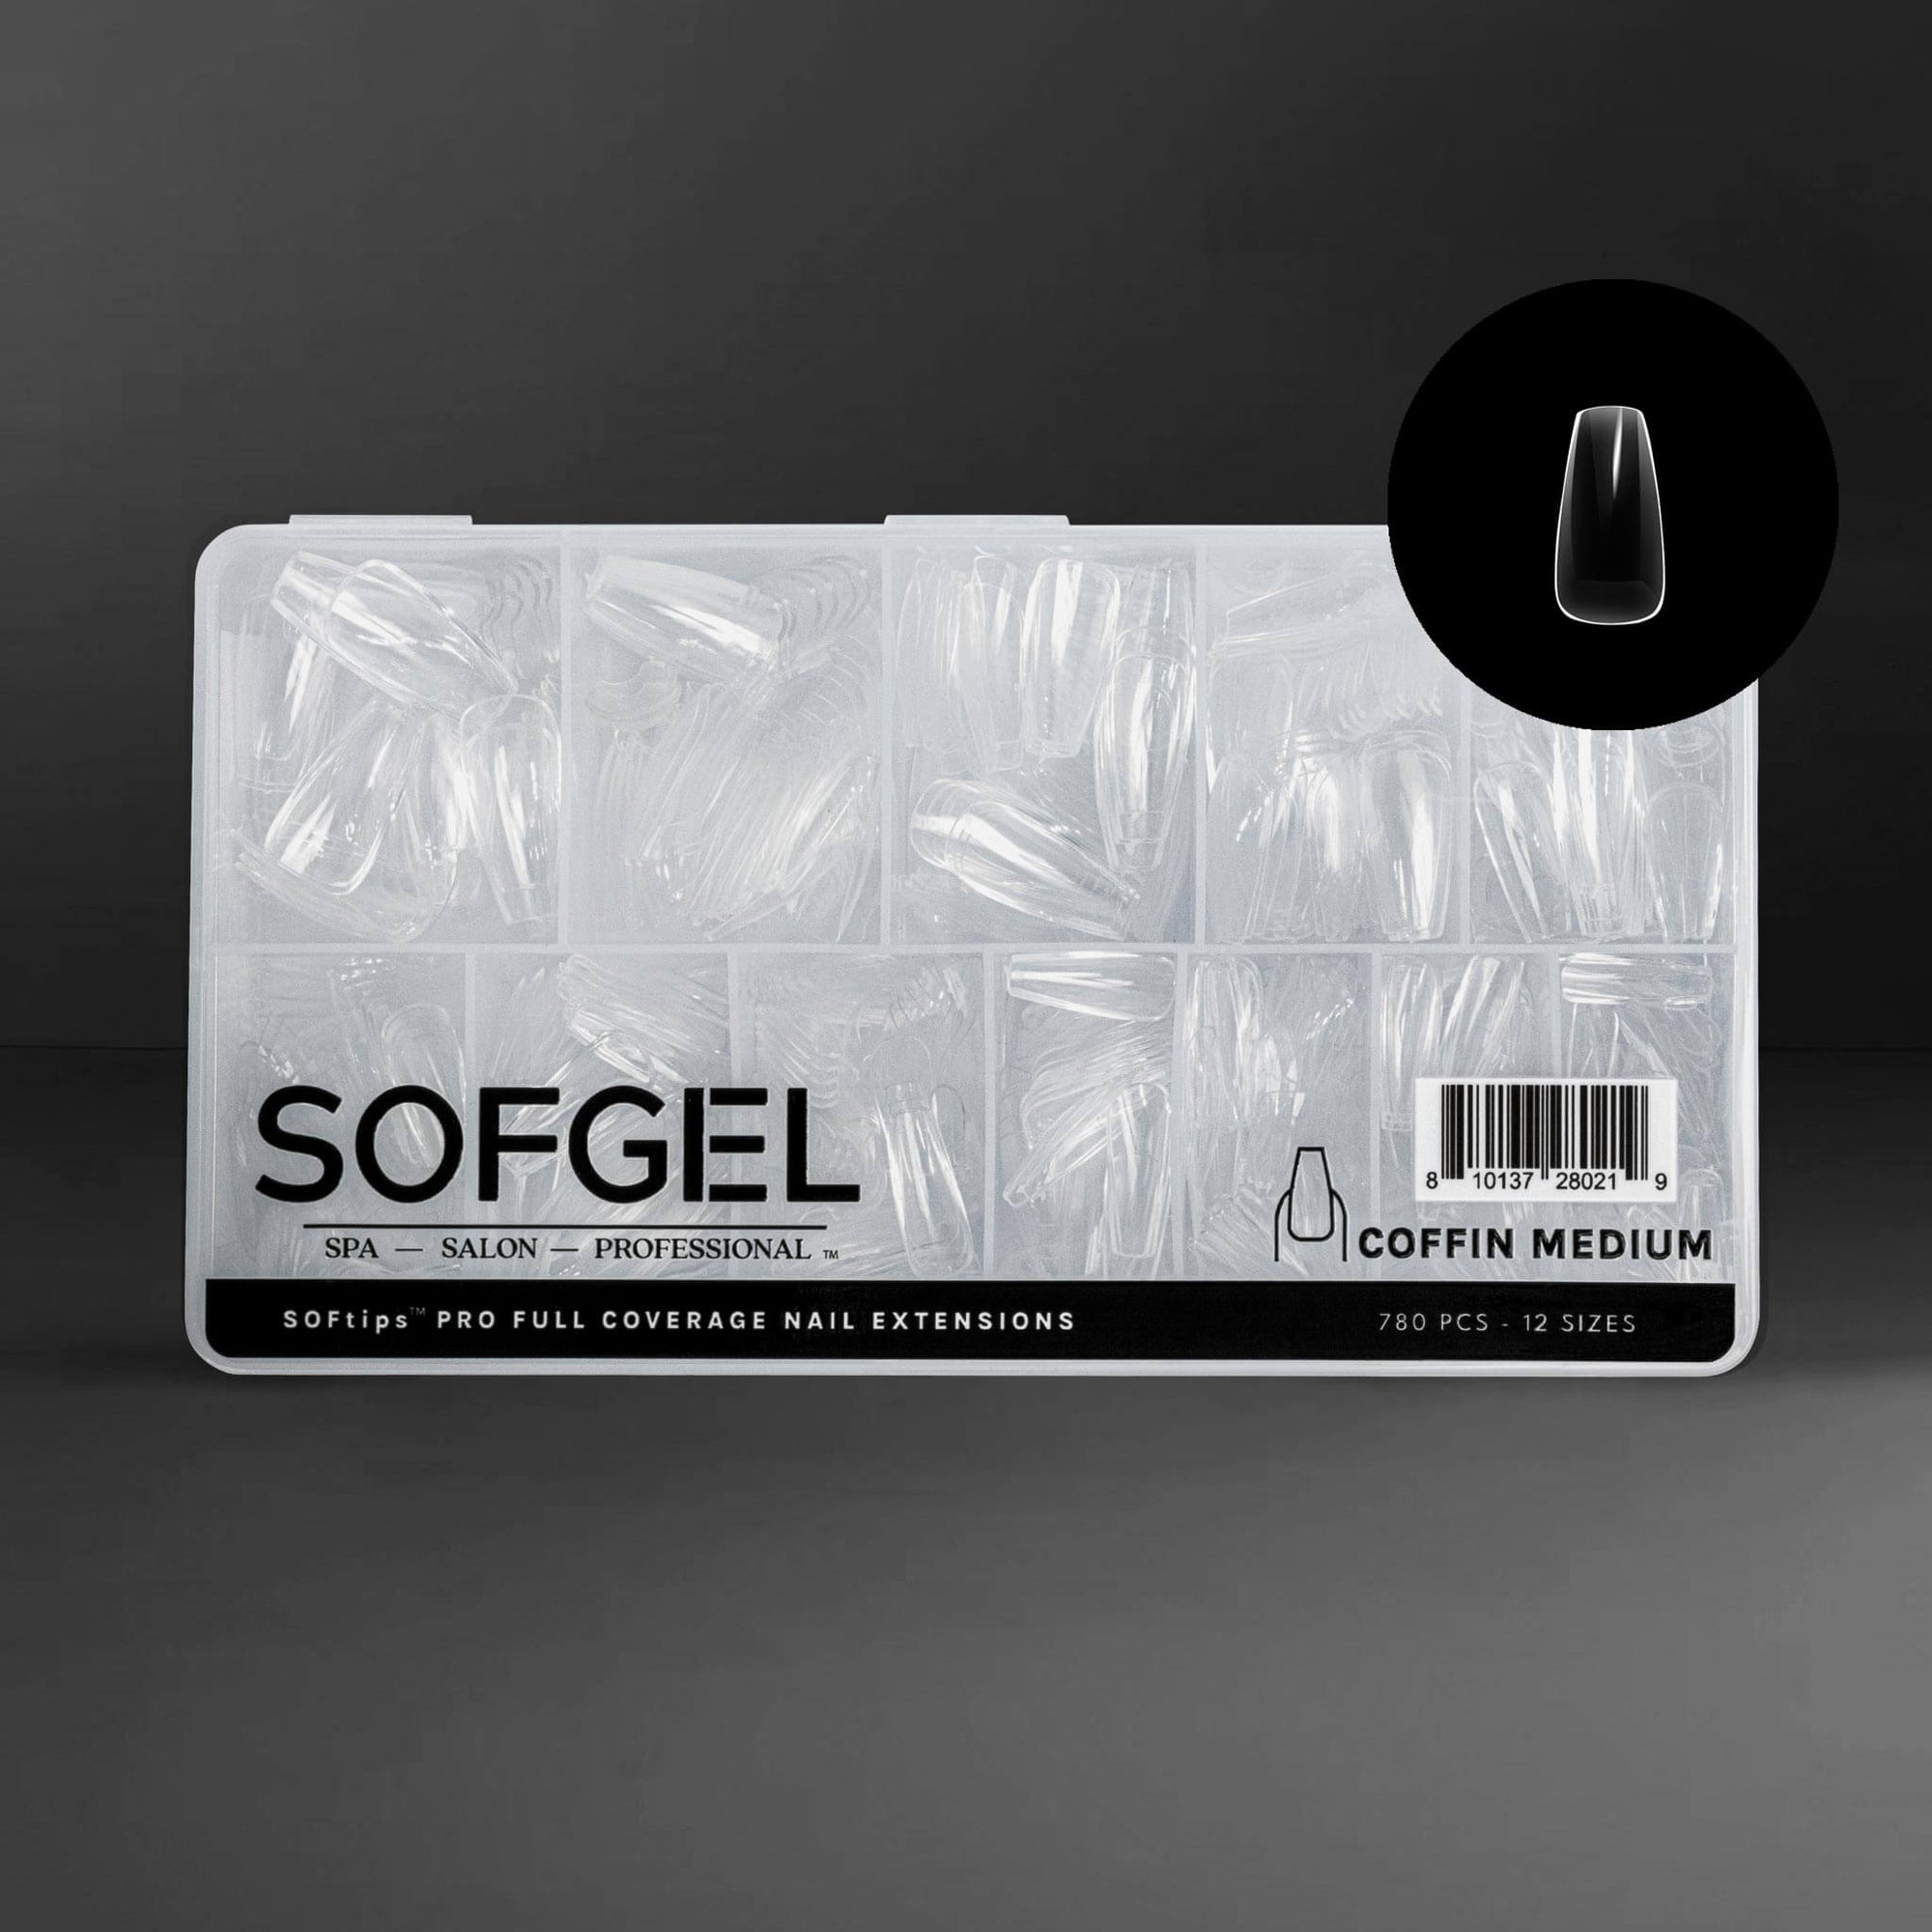 SOFGEL Full Cover Soft Gel Tips - Coffin Medium